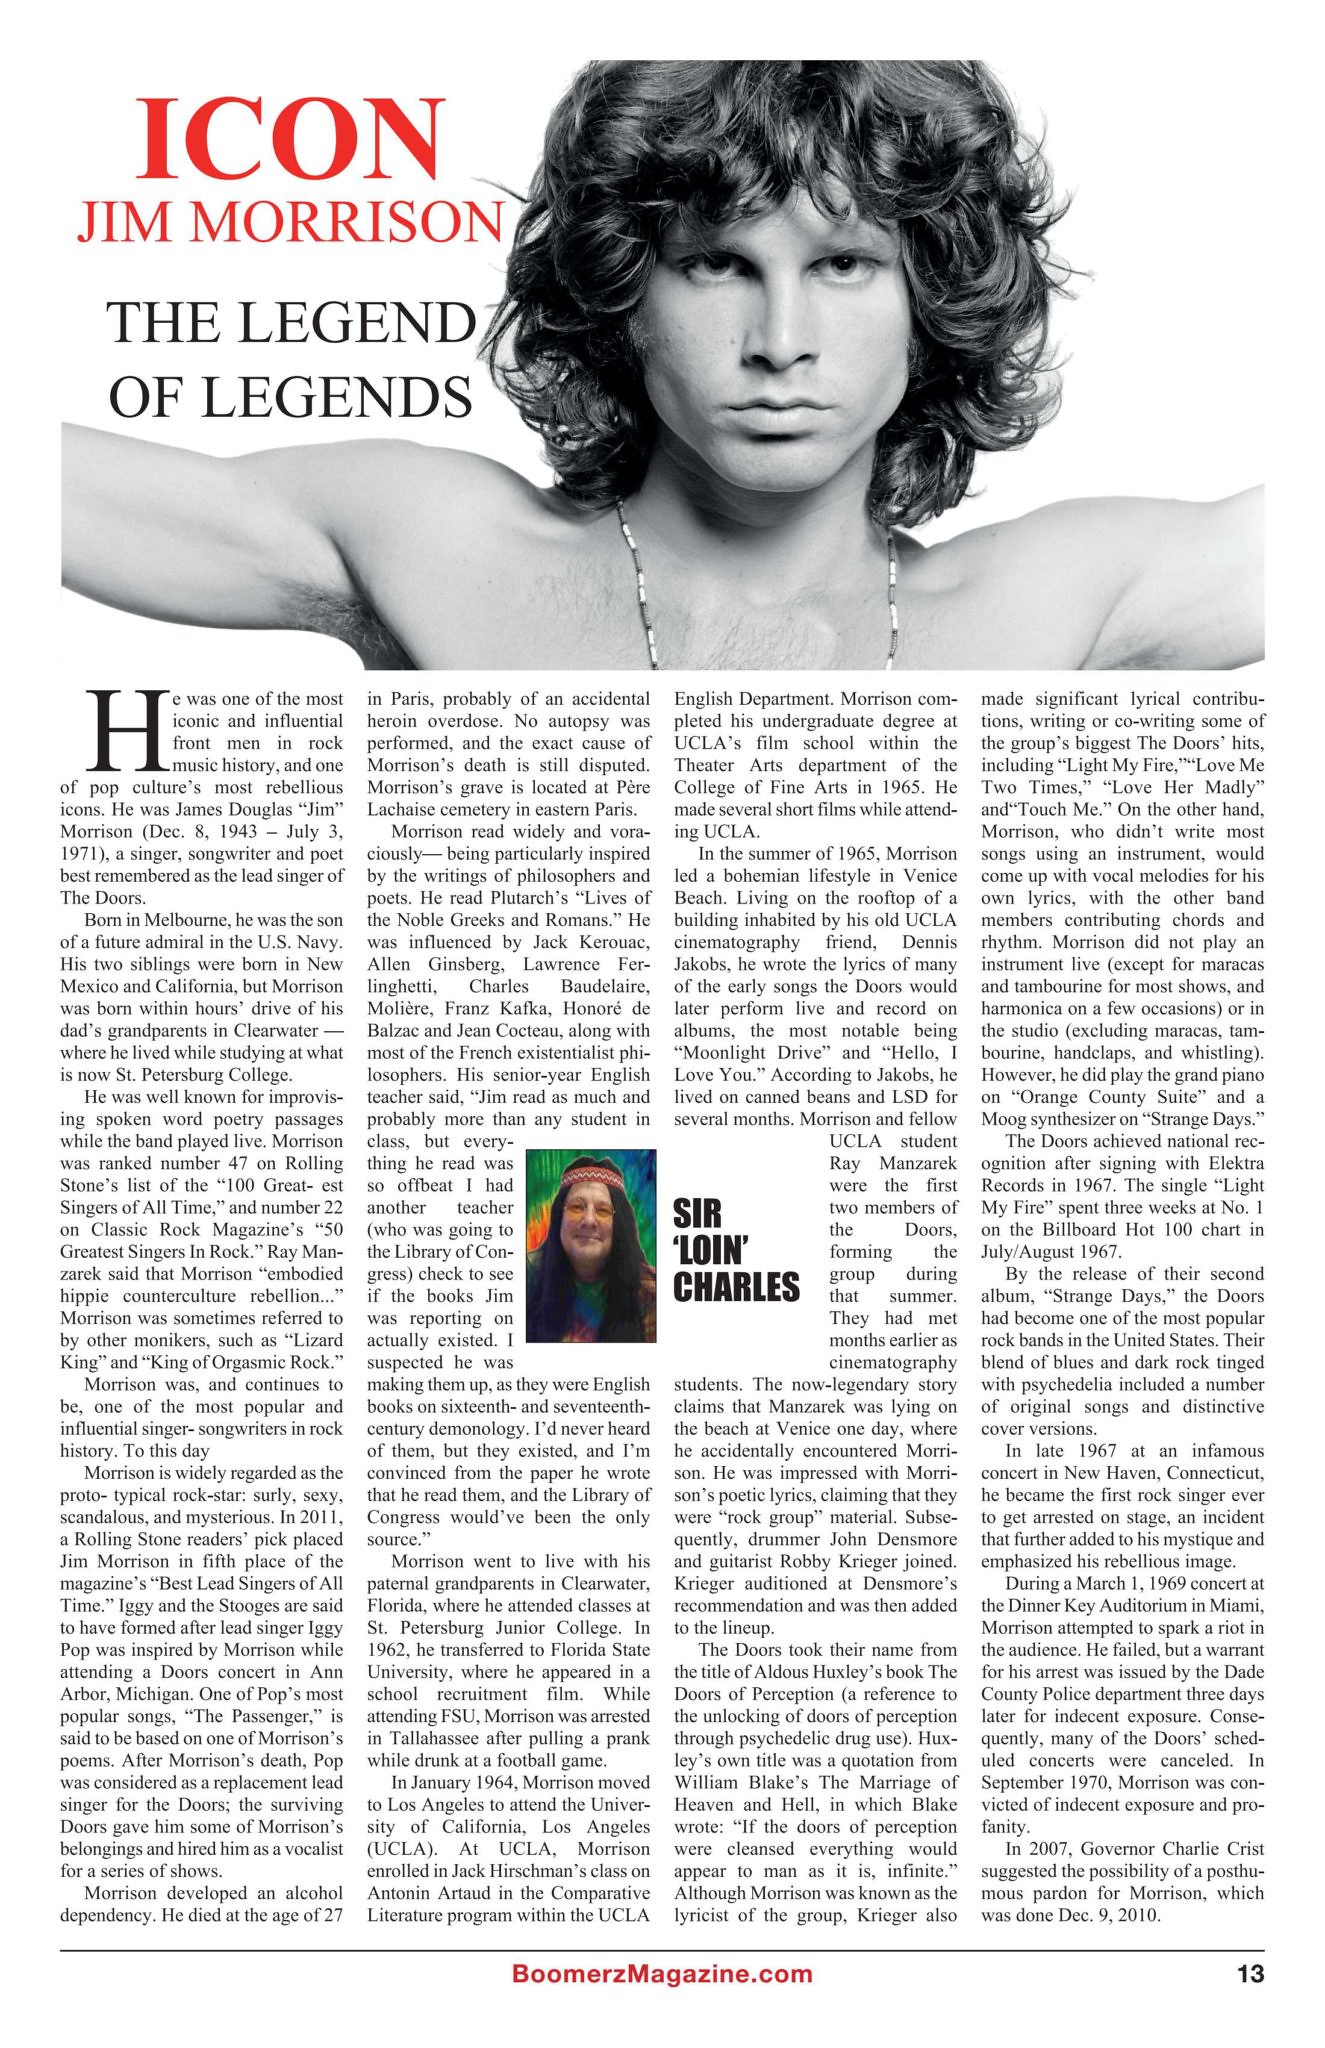 Boomerz Magazine 2018 November Icon Jim Morrison